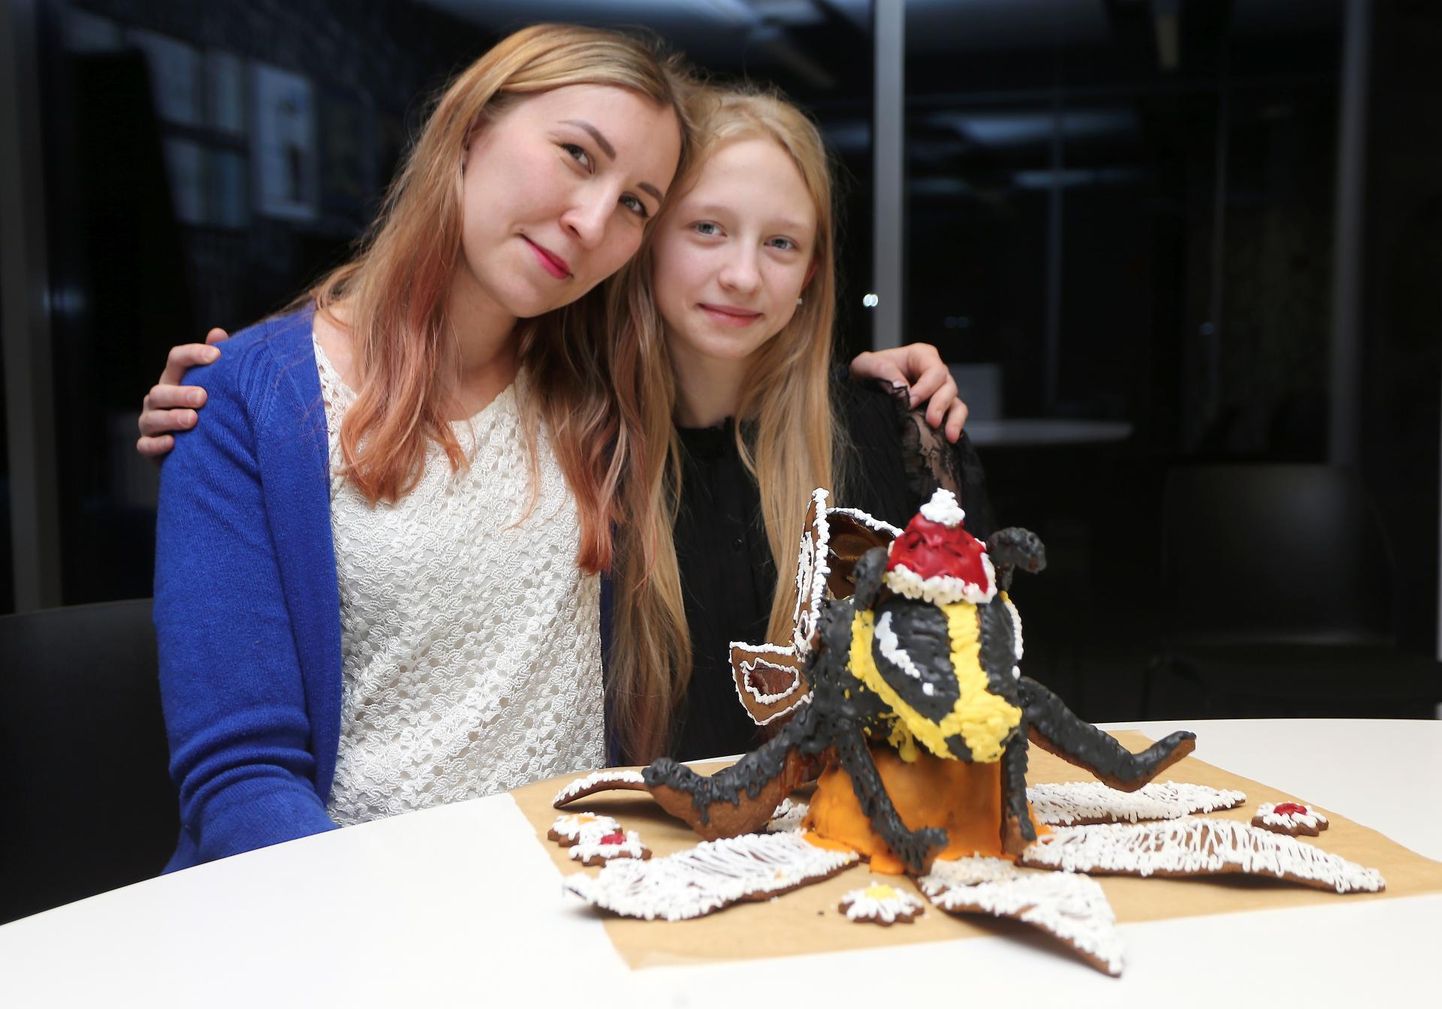 Eelmisel aastal võitsid piparkoogivõistluse õed Margret ja Mairel Jürison, kes meisterdasid piparkoogitainast mesilase.